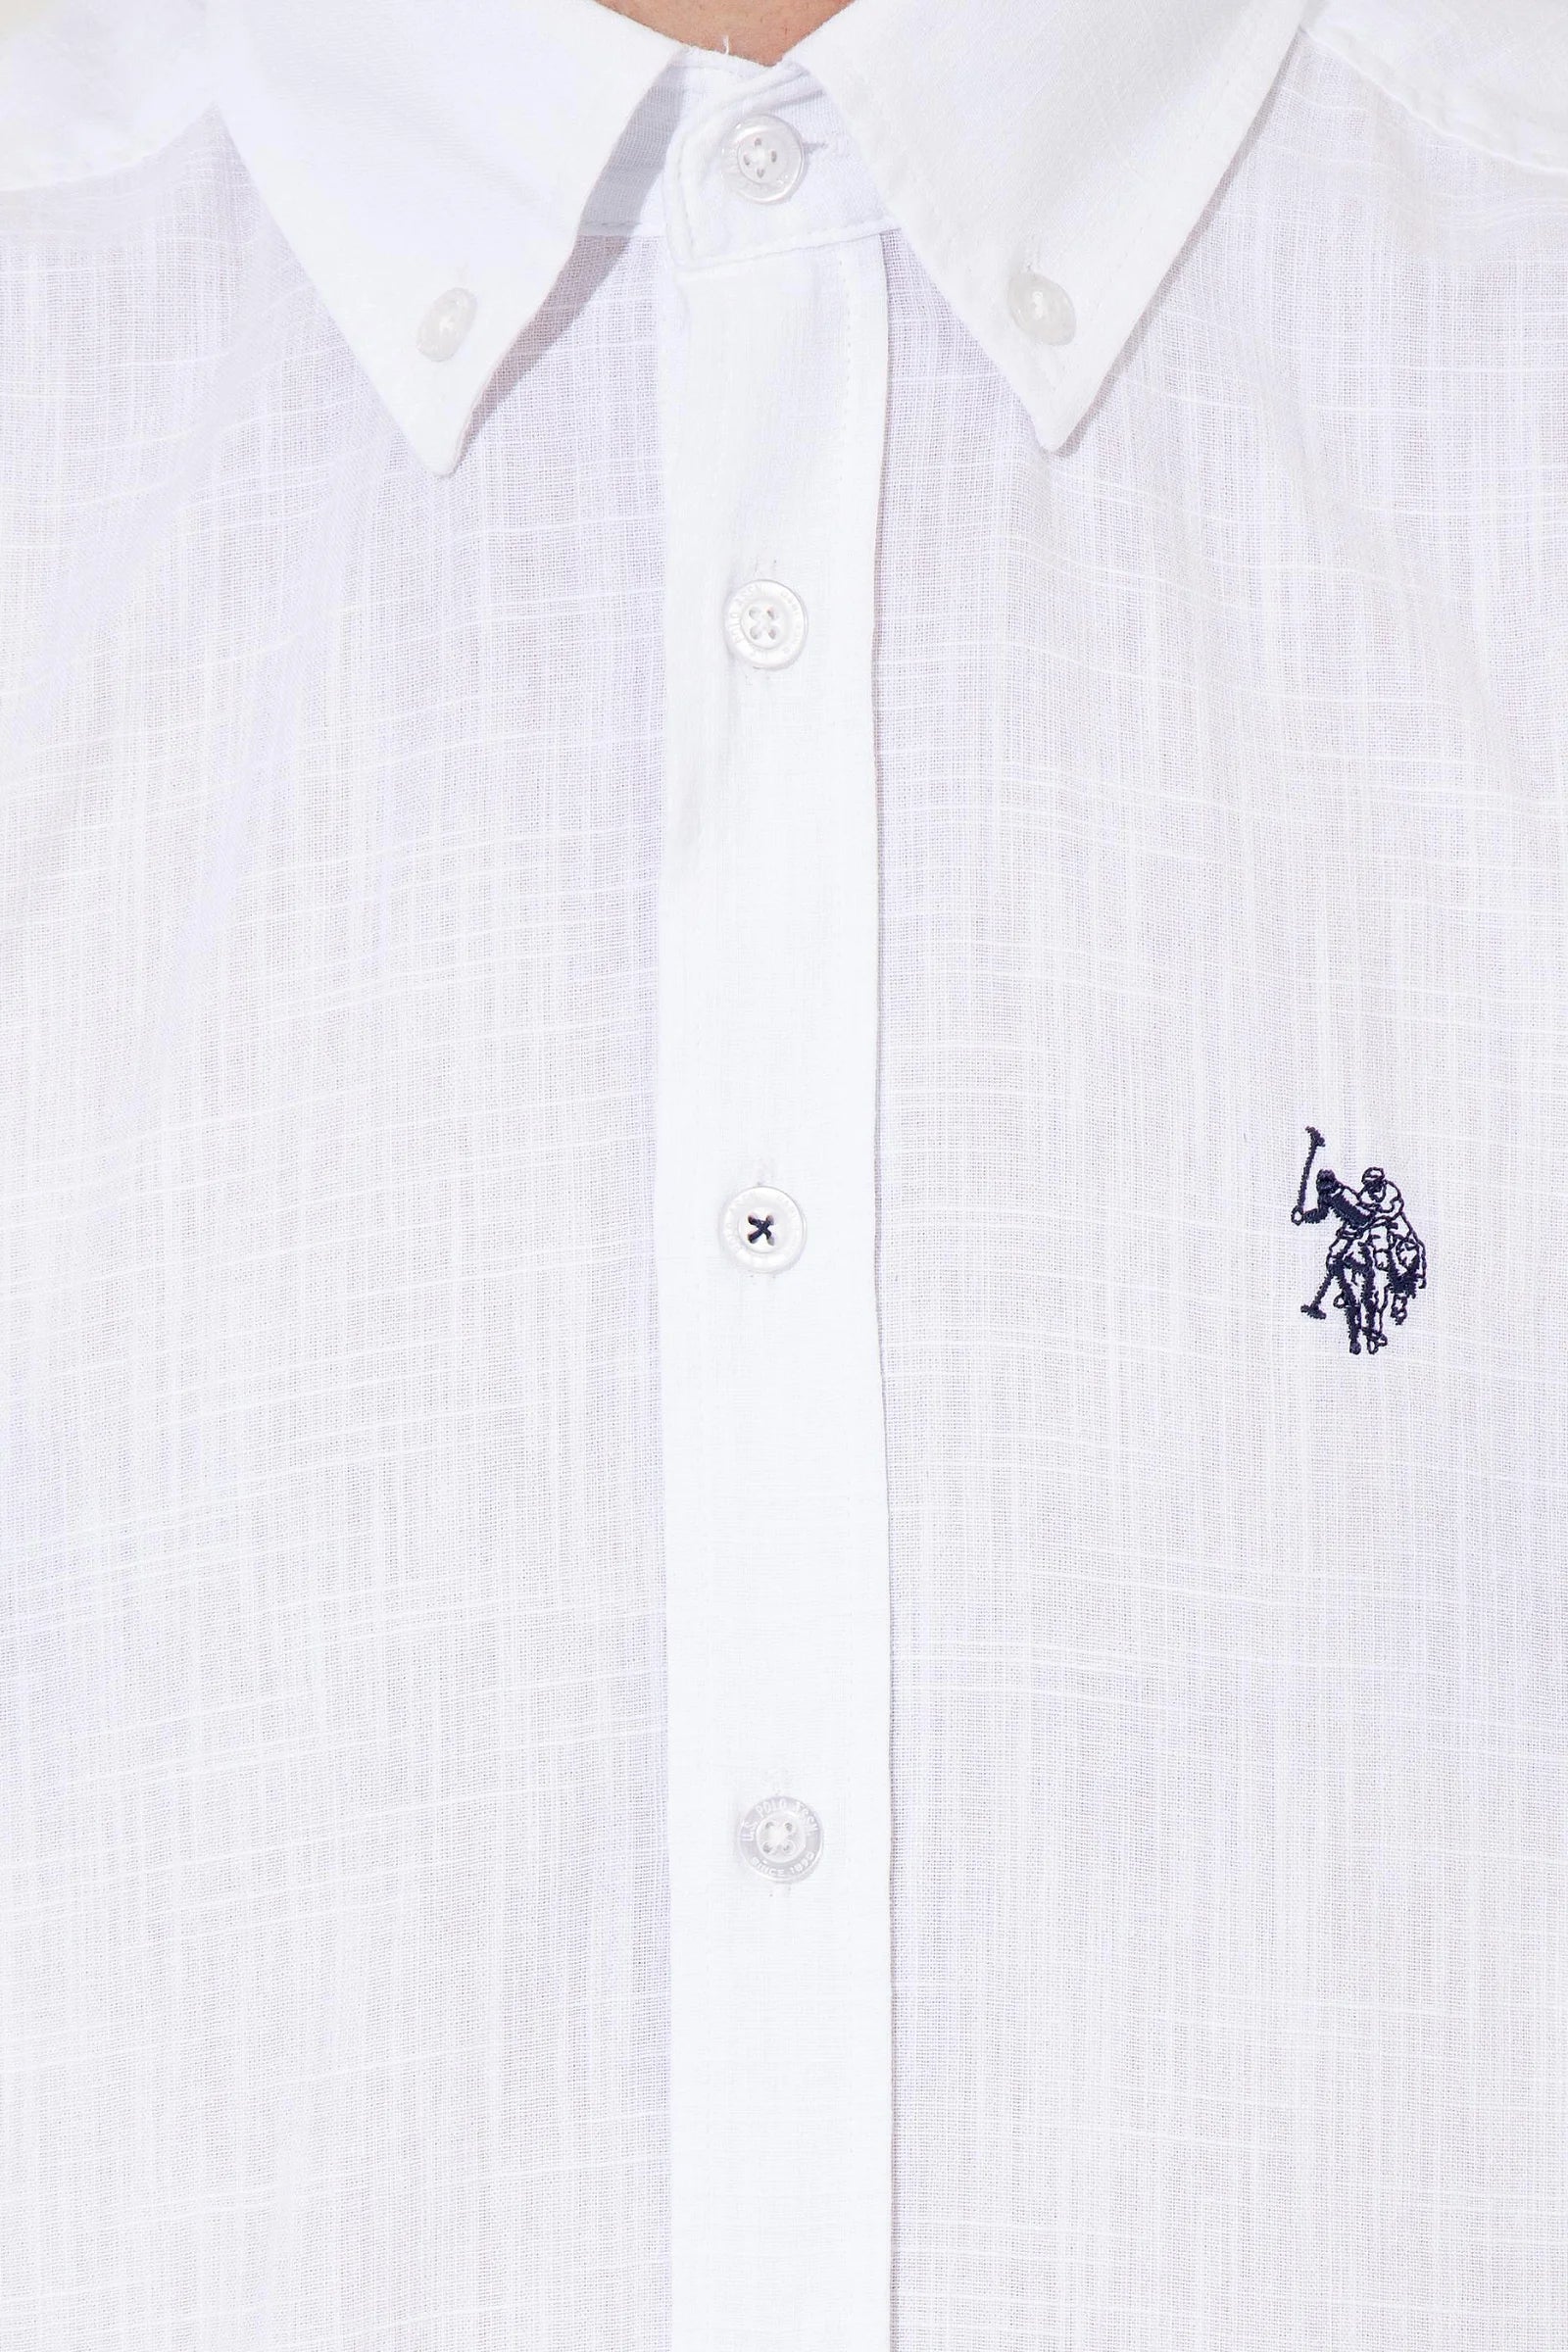 US Polo Assn. Basic Shirt Short Sleeve - Men